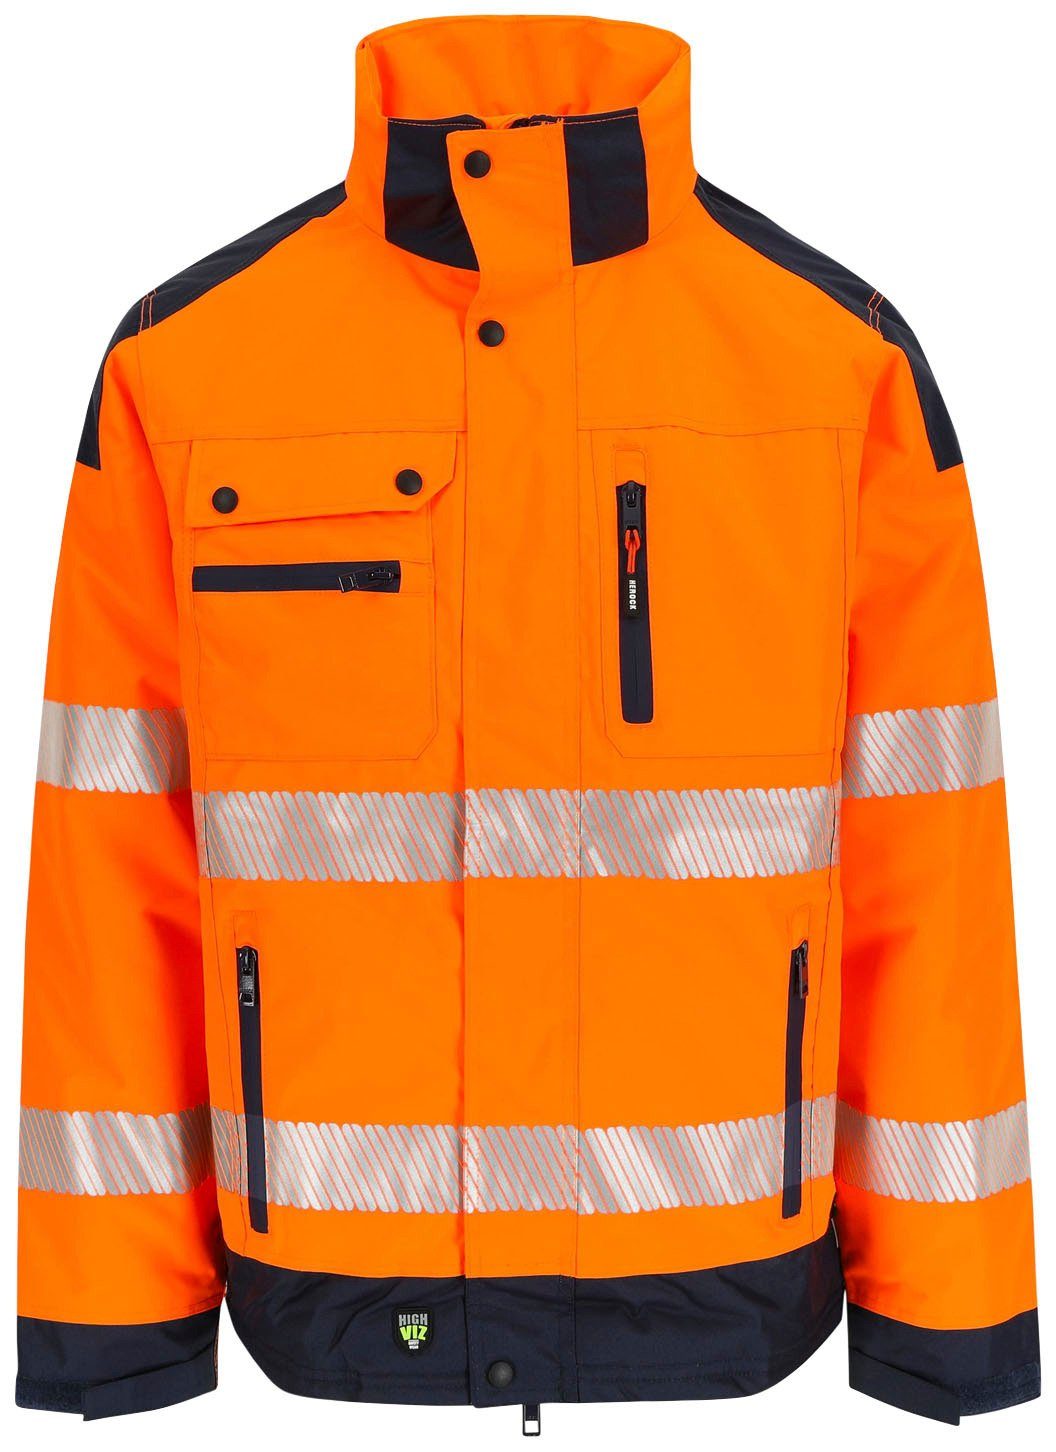 Herock Arbeitsjacke Hodor HIGH VIZ Regenjacke, atmungsaktiv, winddicht, viele Reissverschlusstaschen orange | Arbeitsjacken